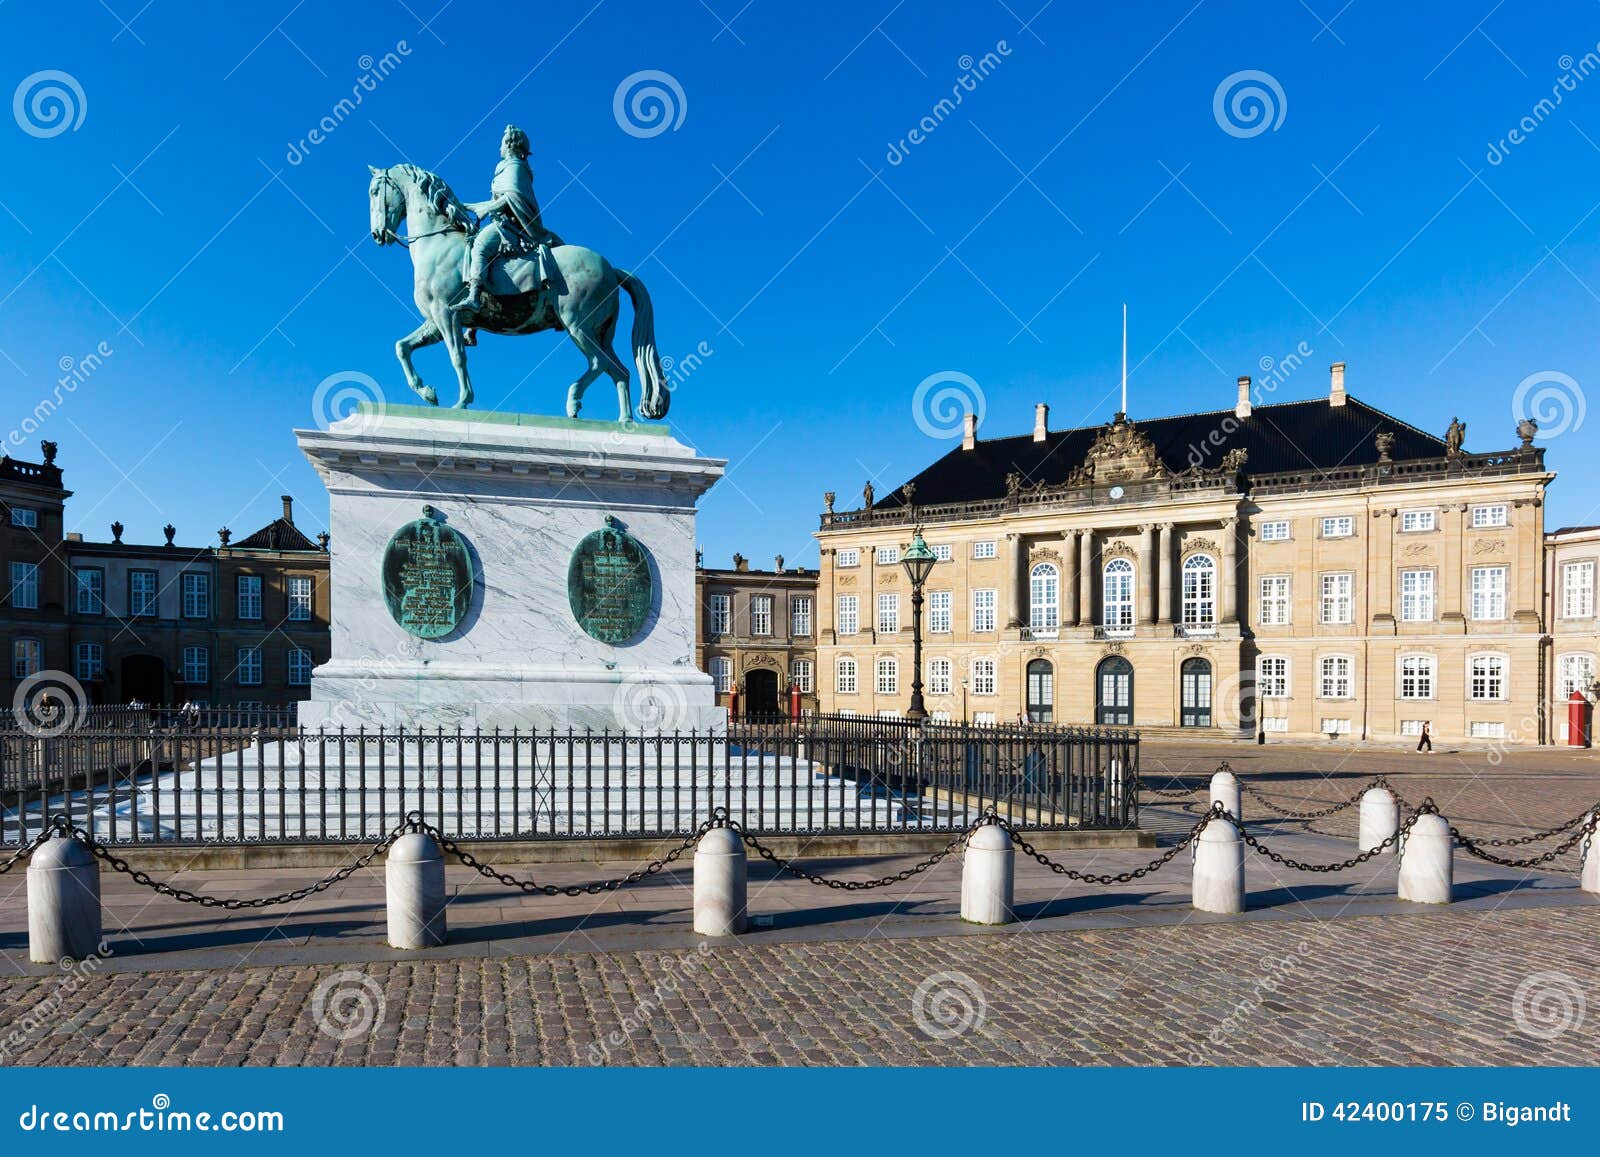 Amalienborg Castle stock image. Image of famous, royal - 42400175